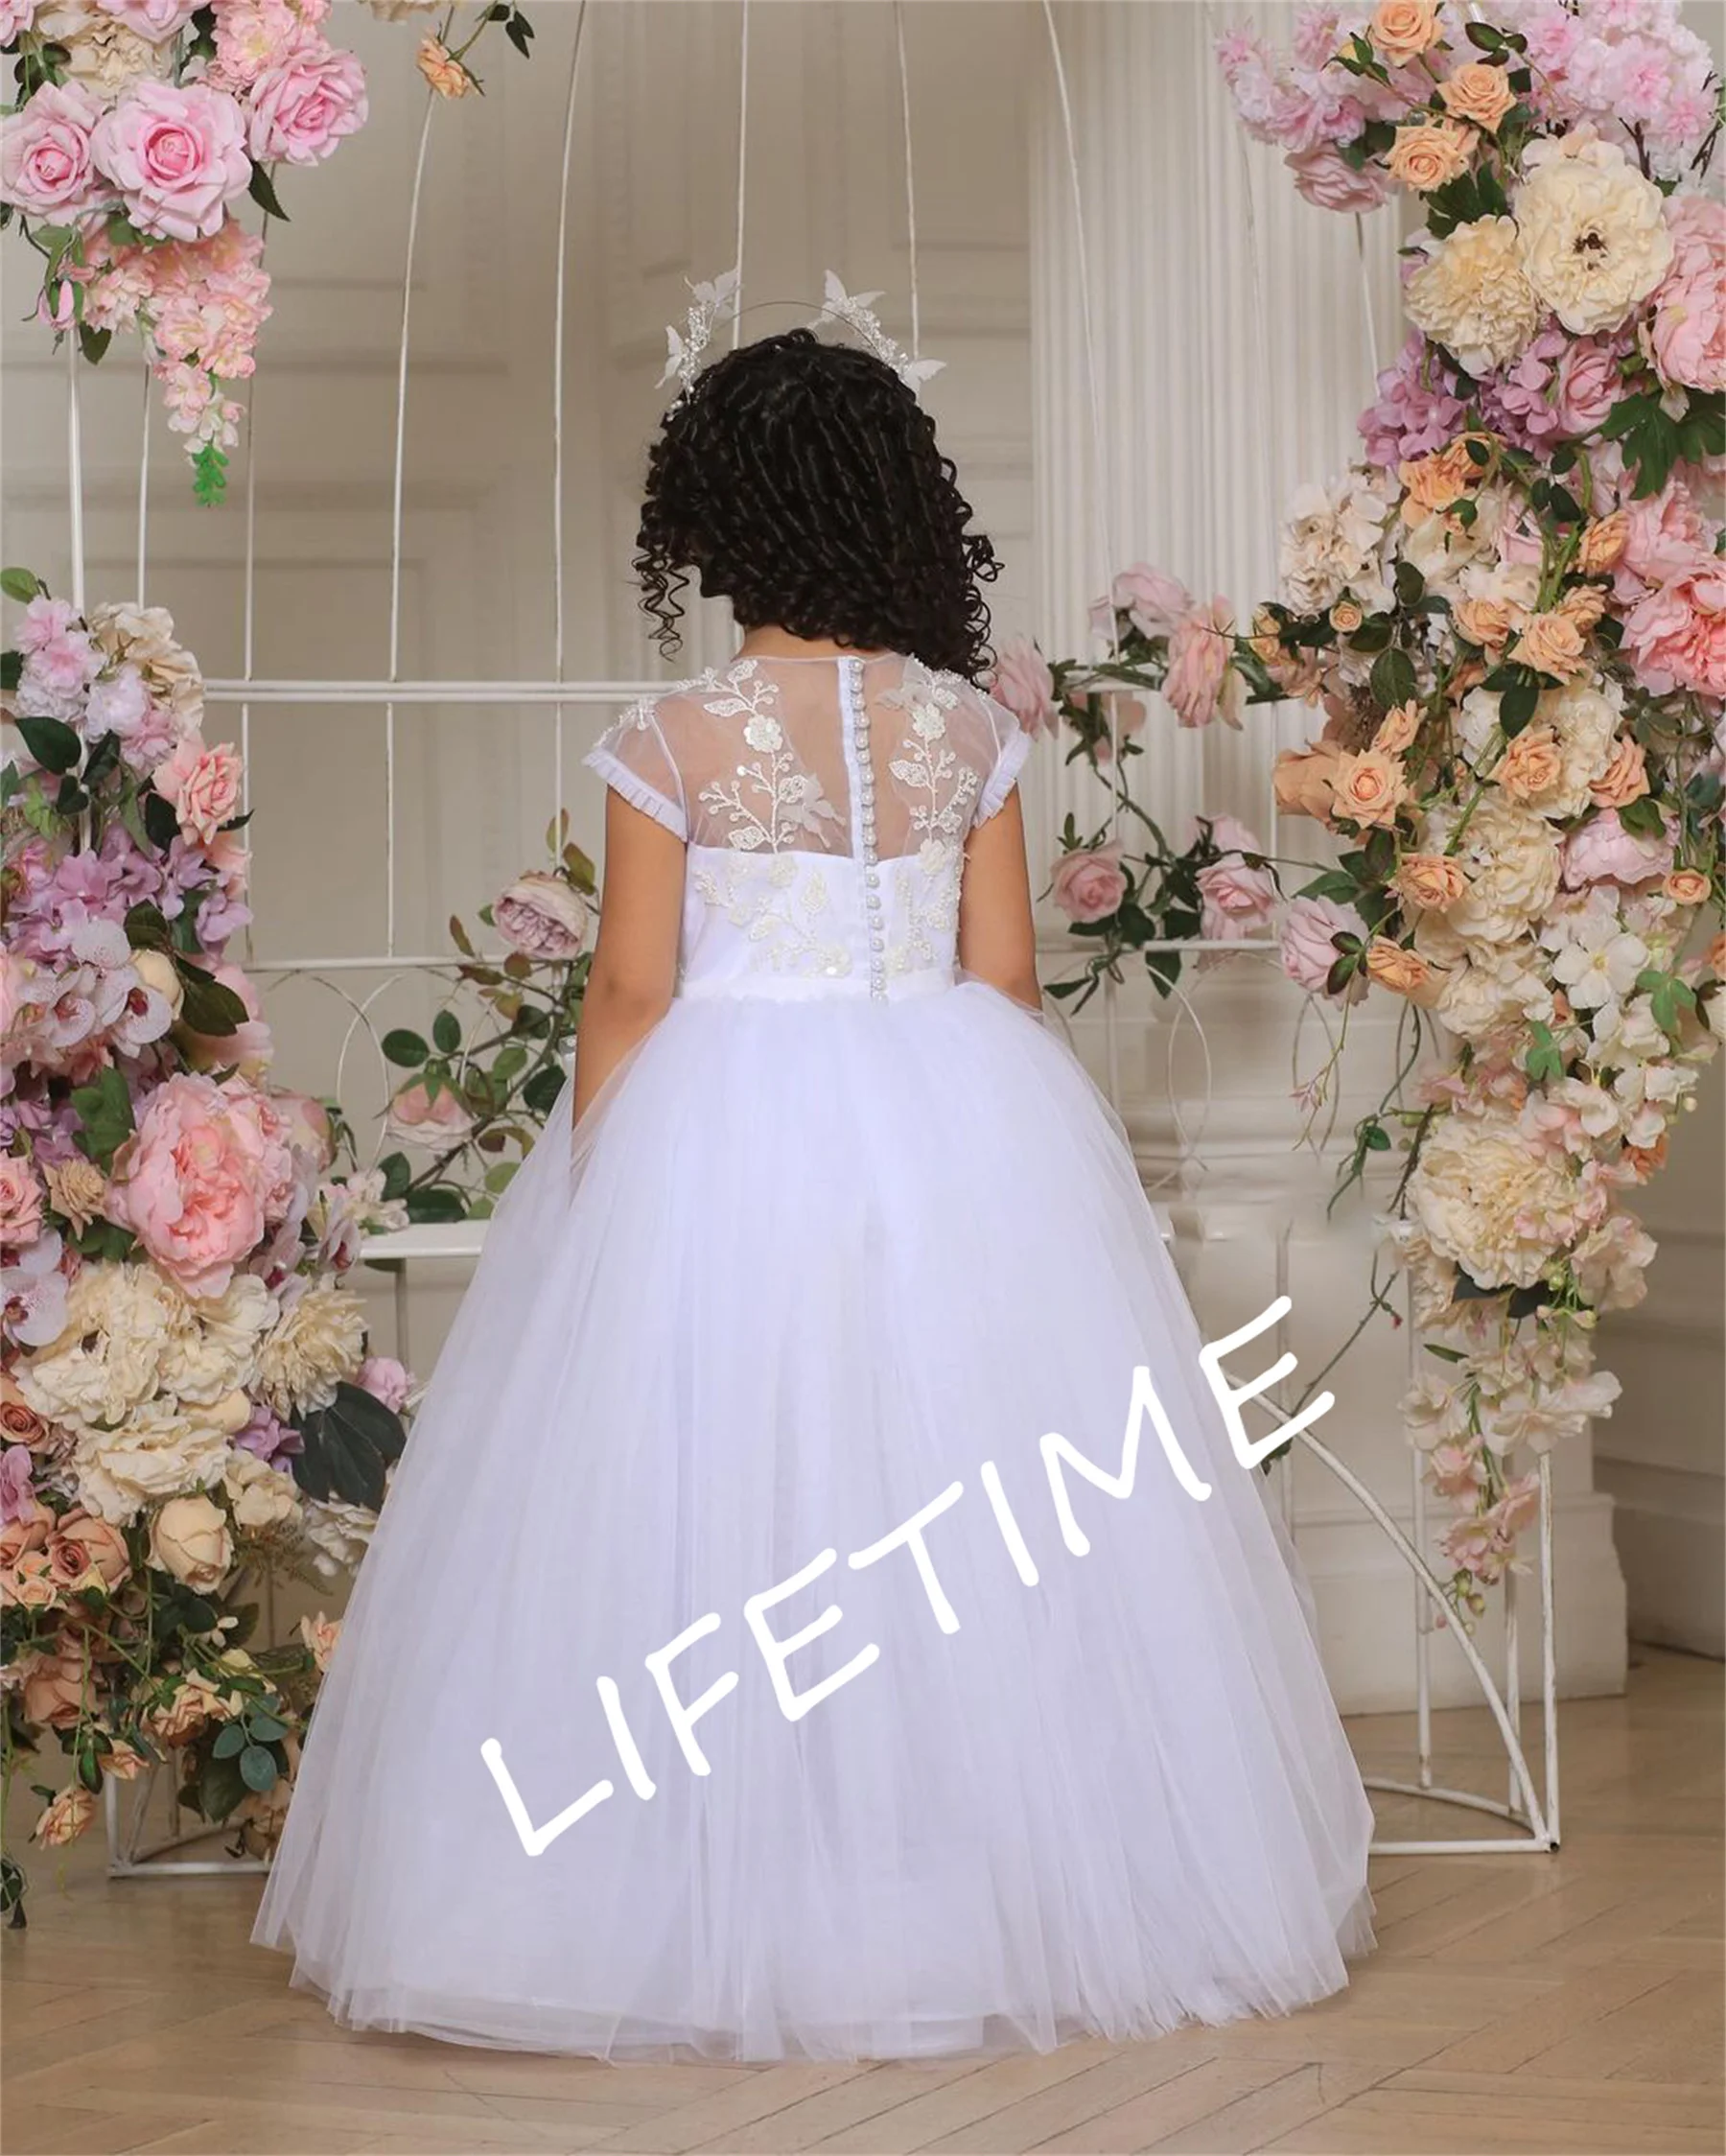 

Puffy Ivory Flower Girl Dress Pretty Girl Dress Princess Dress First Communion Dress Cap Sleeve Girl Wedding Party Dress